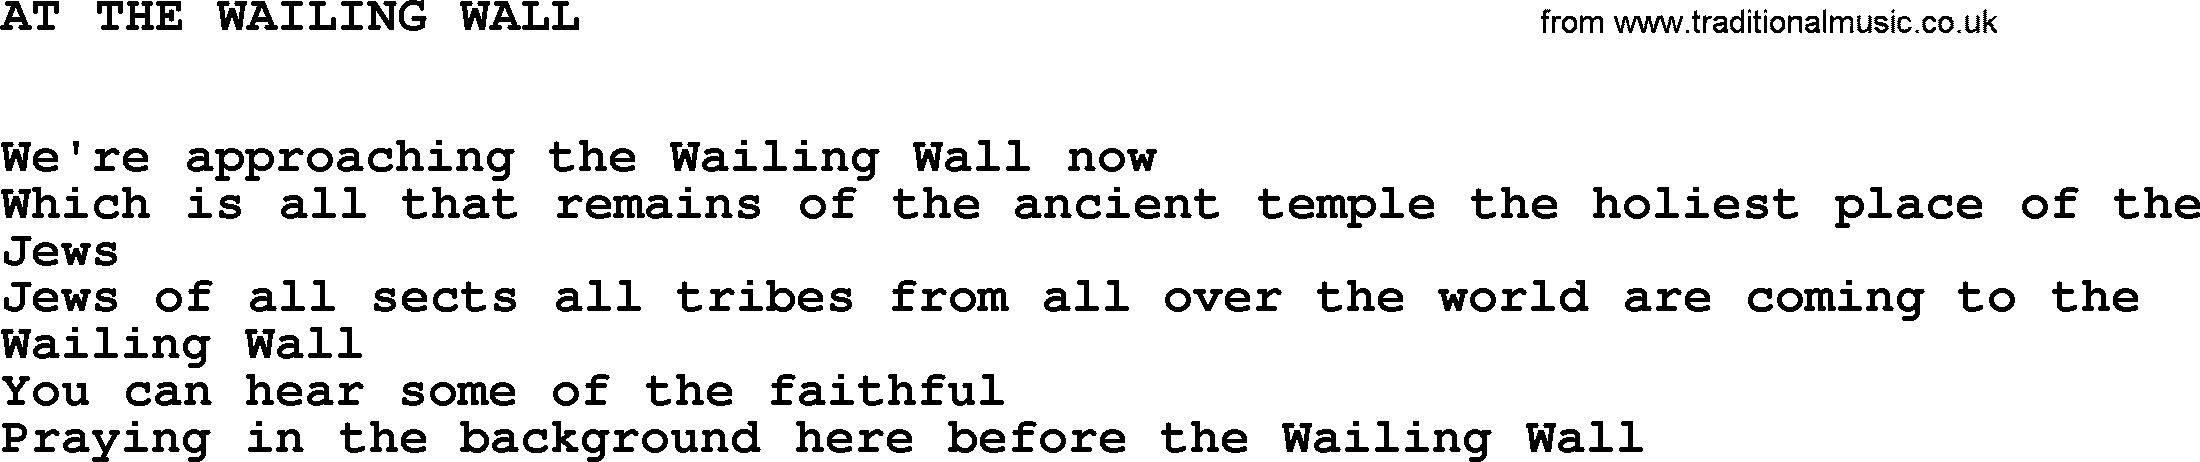 Johnny Cash song At The Wailing Wall.txt lyrics